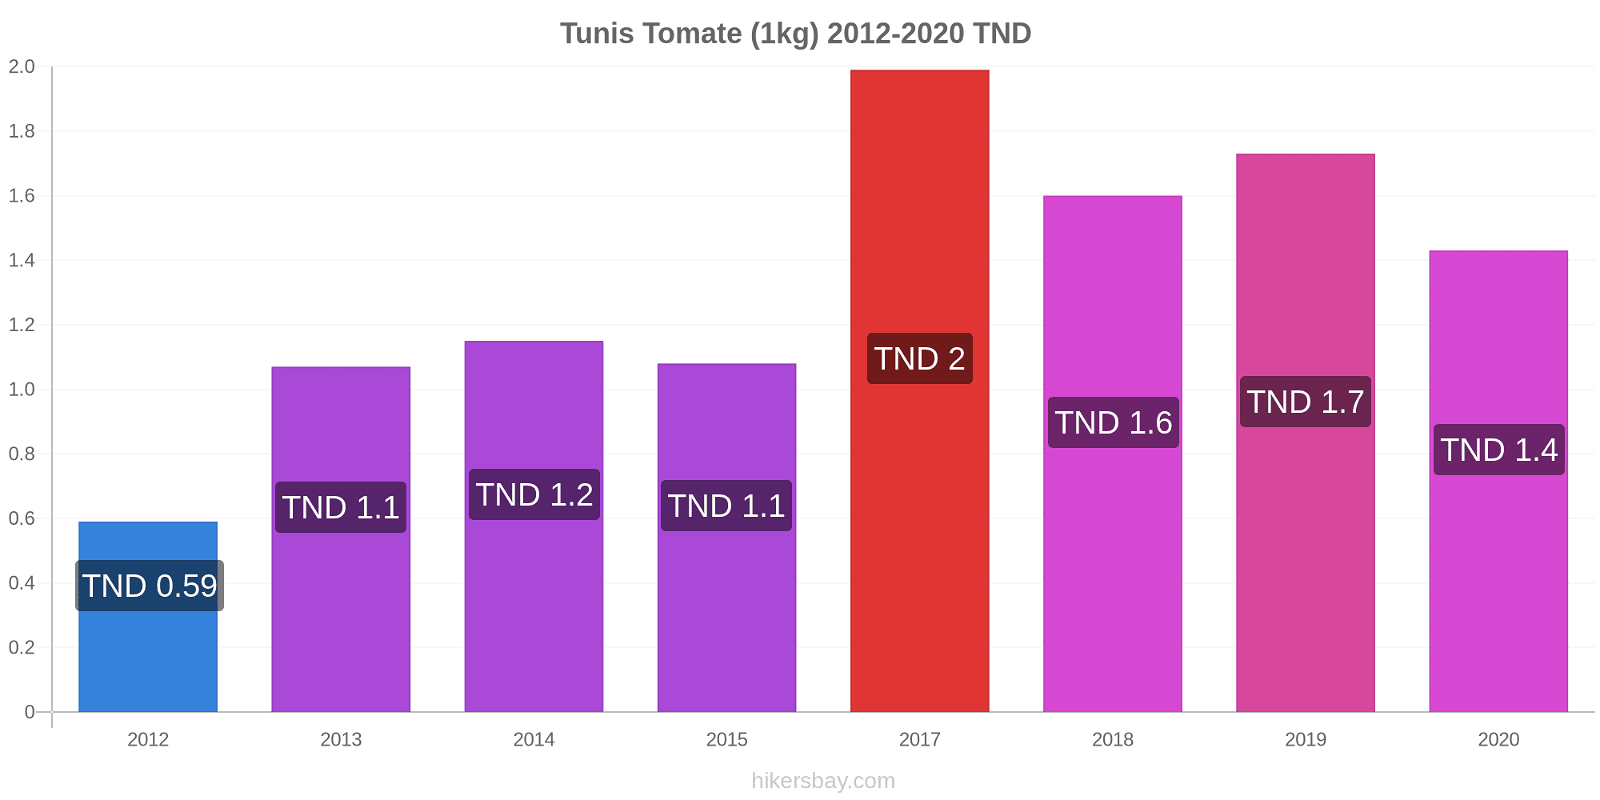 Tunis changements de prix Tomate (1kg) hikersbay.com